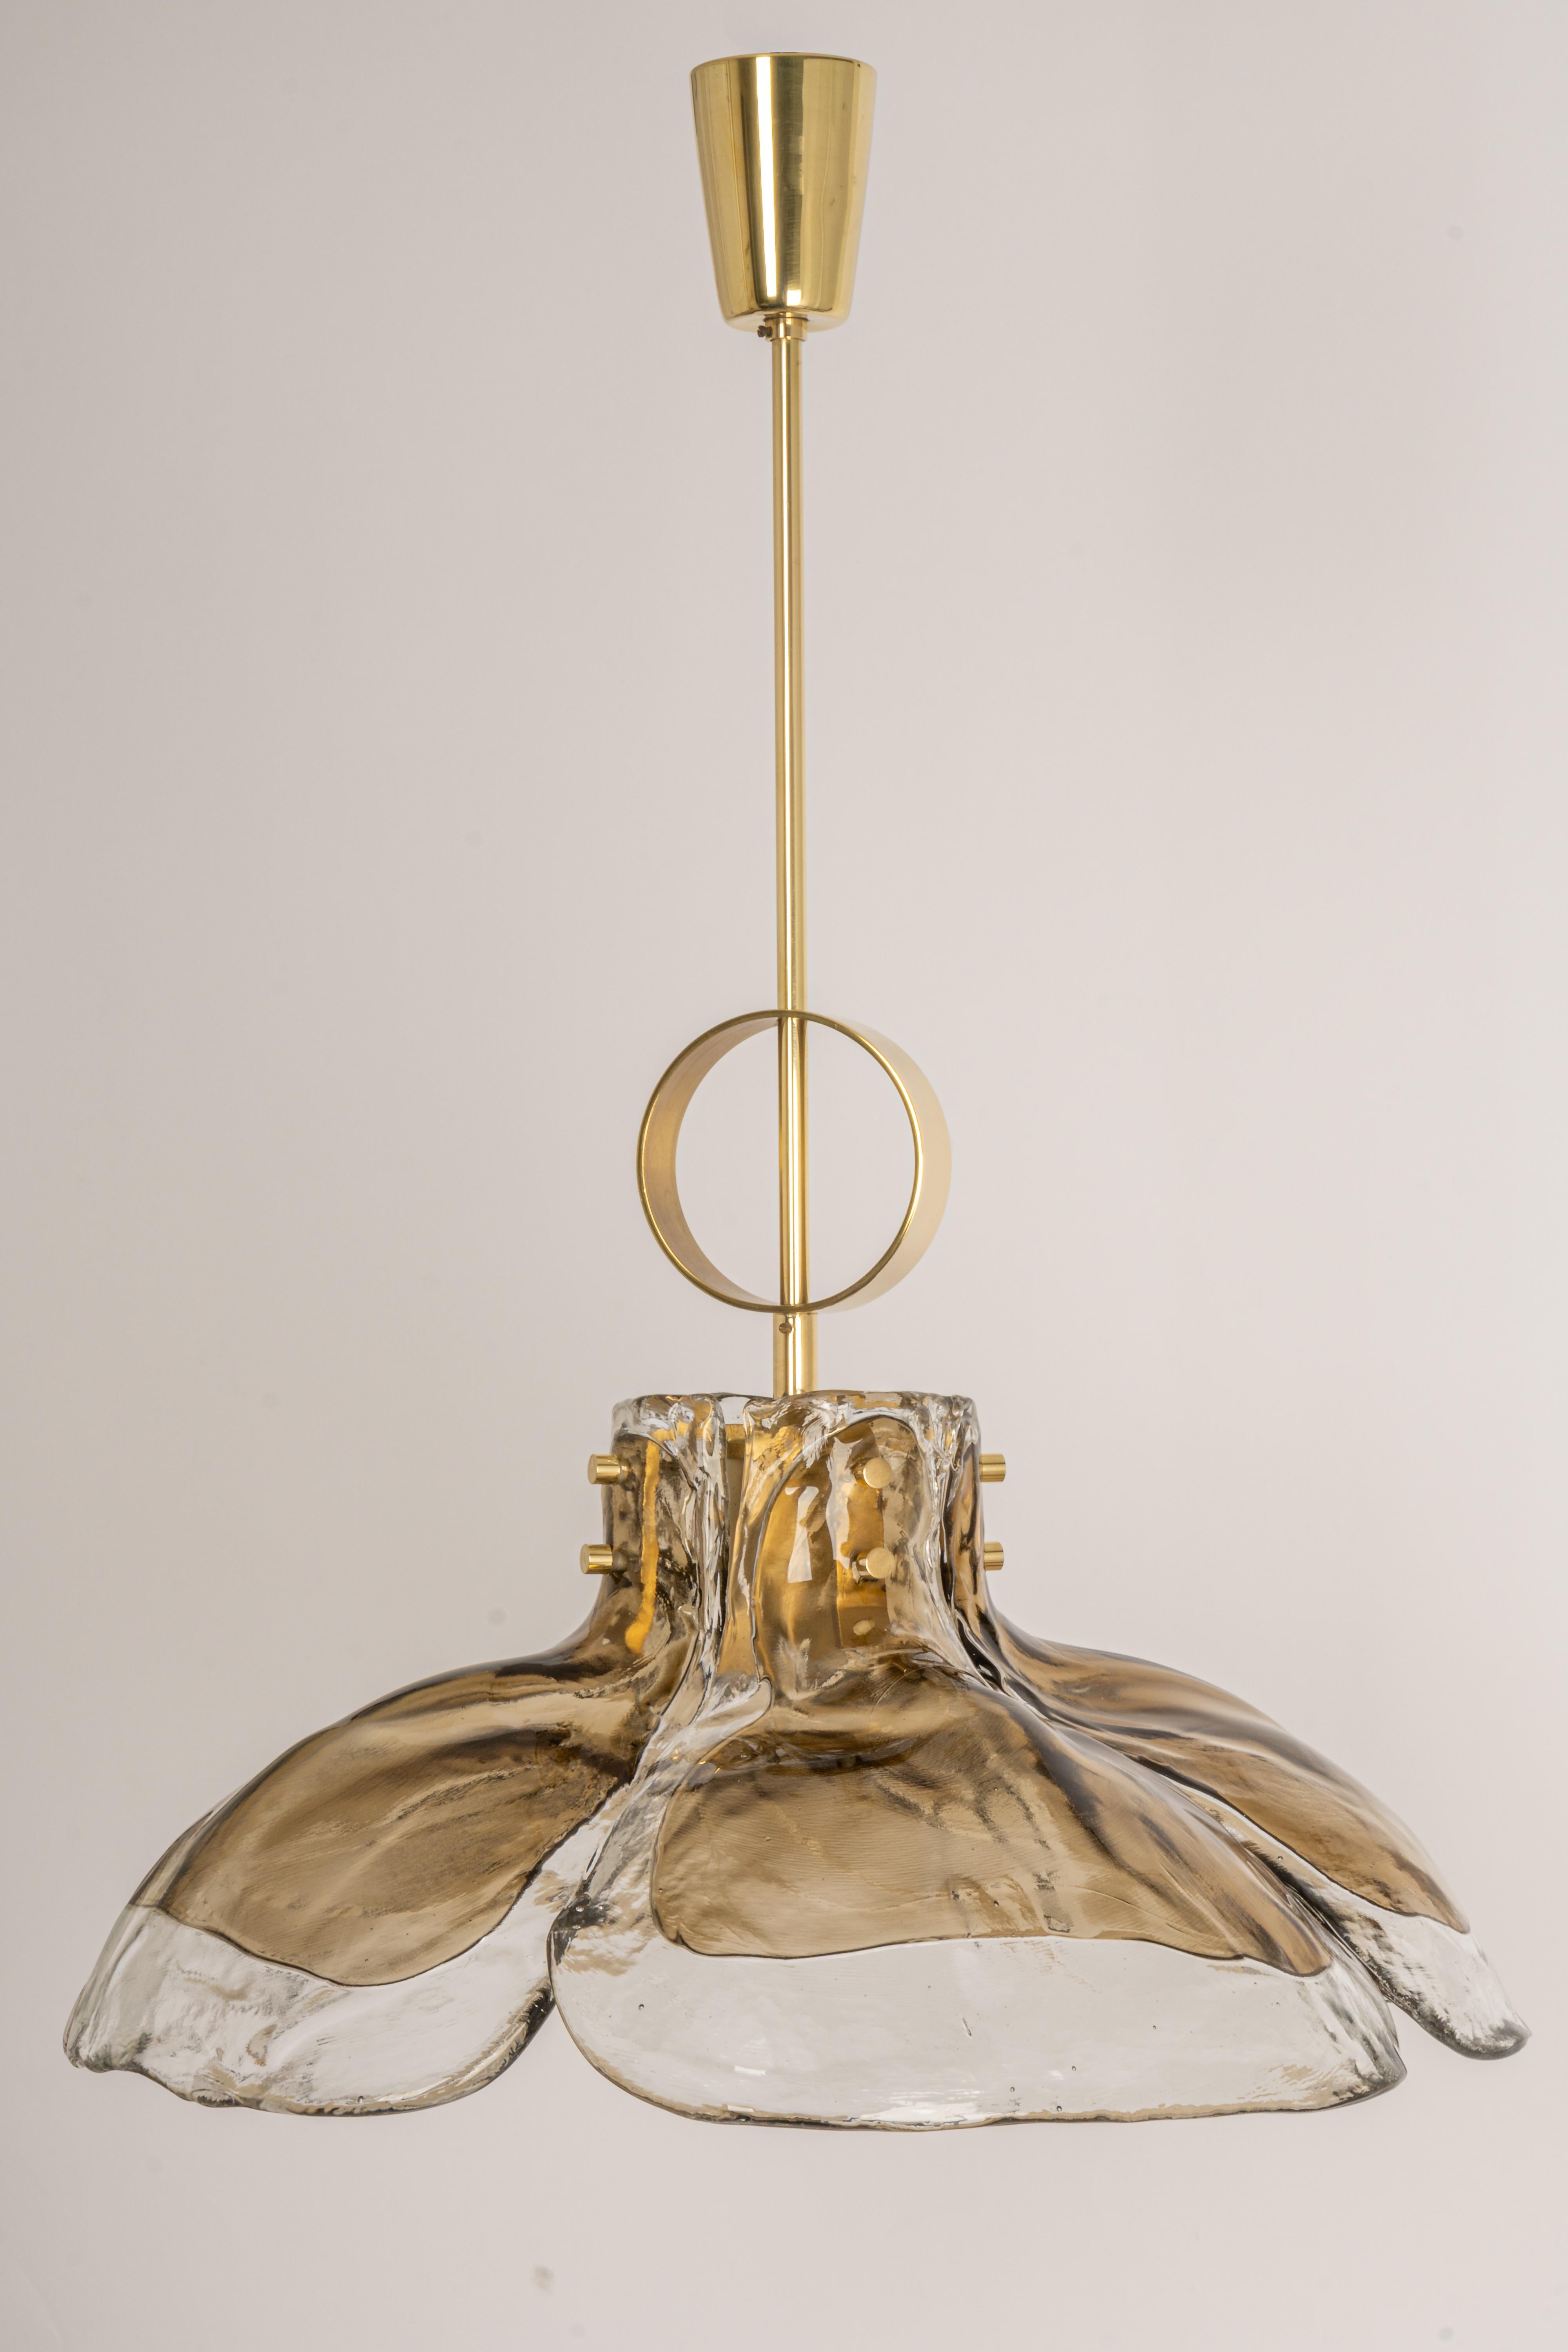 Ein atemberaubender Murano-Kronleuchter aus Rauchglas, entworfen von Kalmar, Österreich, hergestellt in den 1960er Jahren.
Der Kronleuchter besteht aus 4 dicken Murano-Glaselementen, die an einem Metallrahmen befestigt sind.

Hochwertig und in sehr